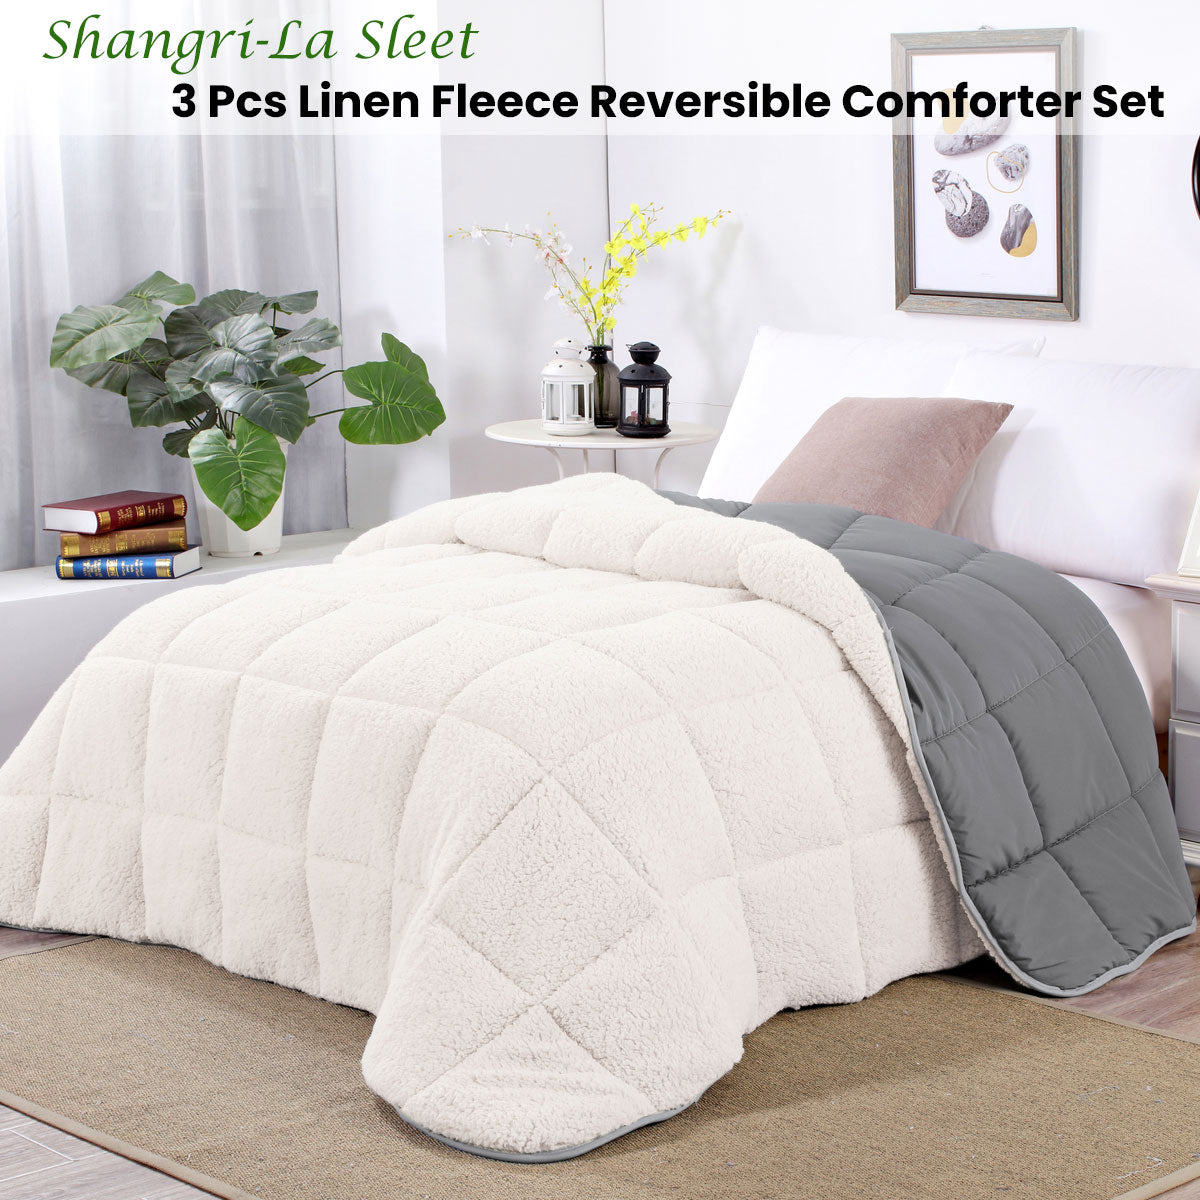 Queen Shangri La Sleet Sherpa Fleece Reversible 3 Pcs Comforter Set - White/Grey